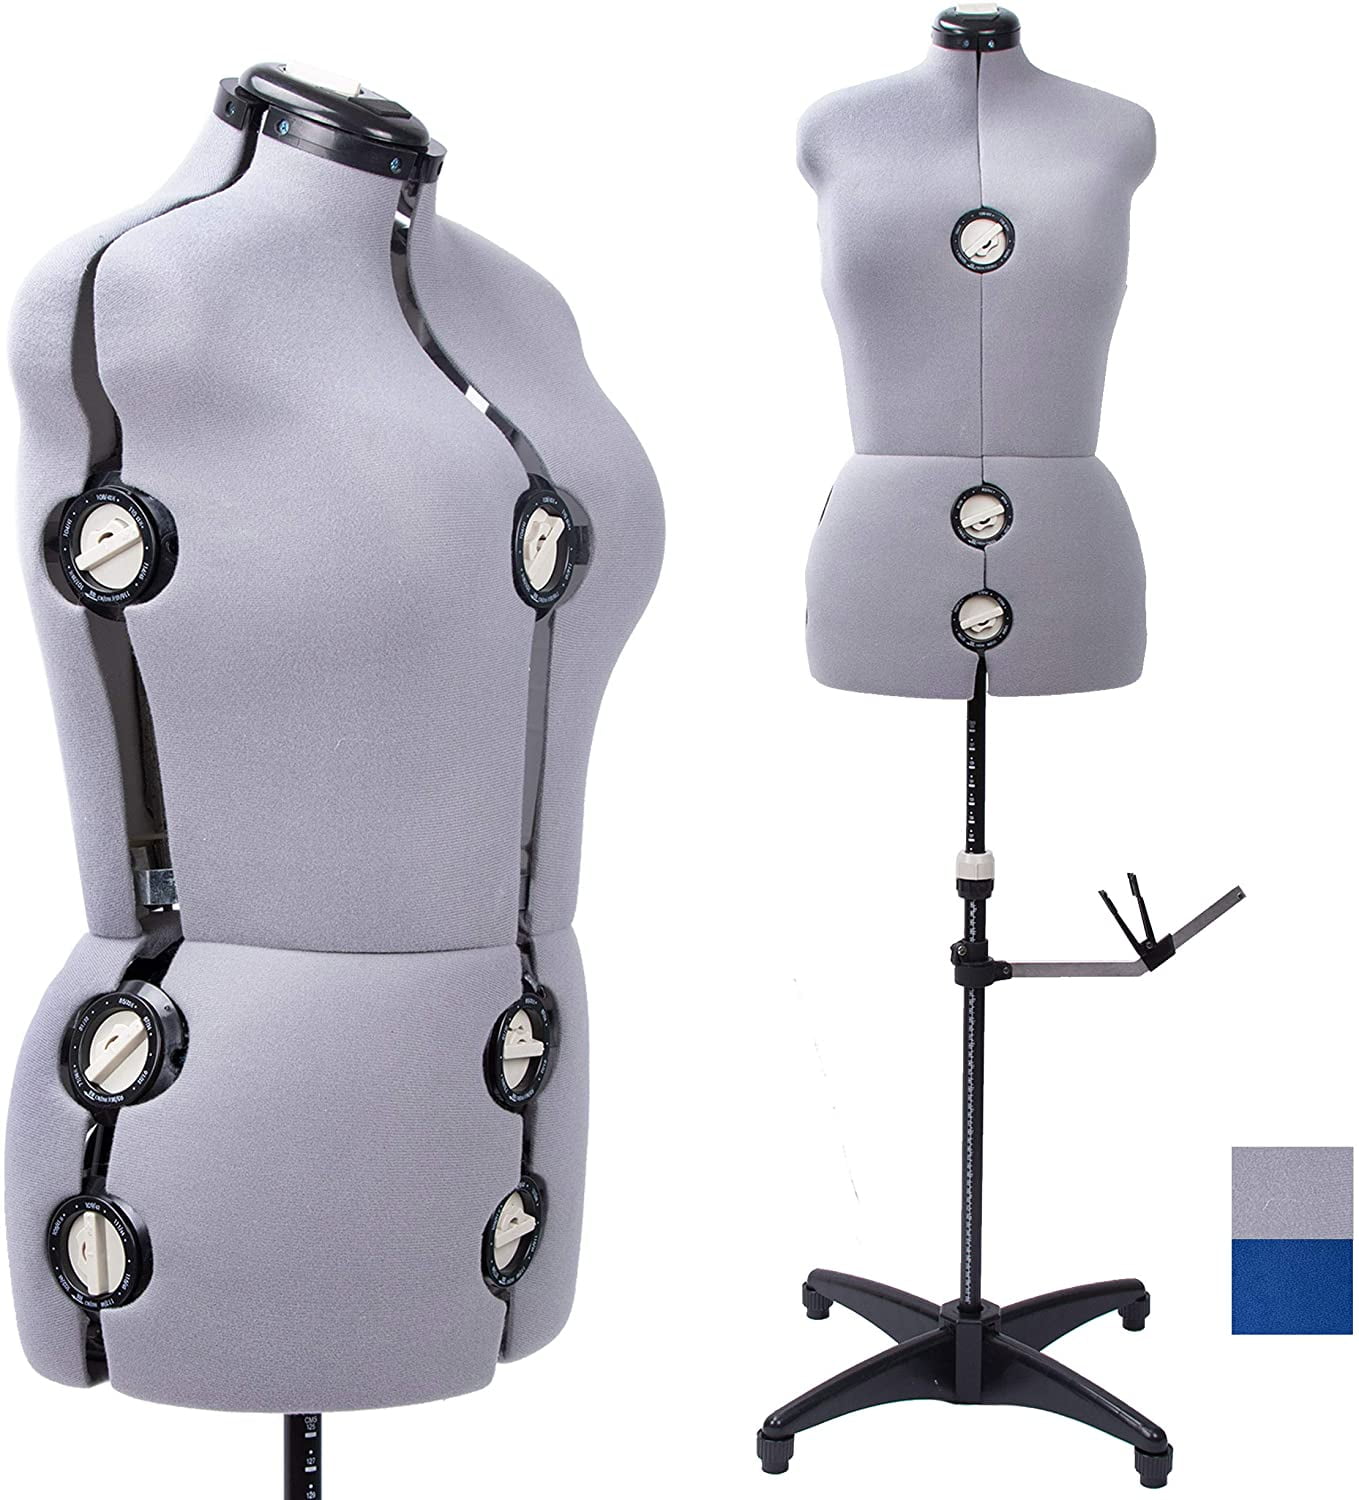 Adjustable Dress Form For Sewing Full Figure Female Mannequin Torso Base Medium 